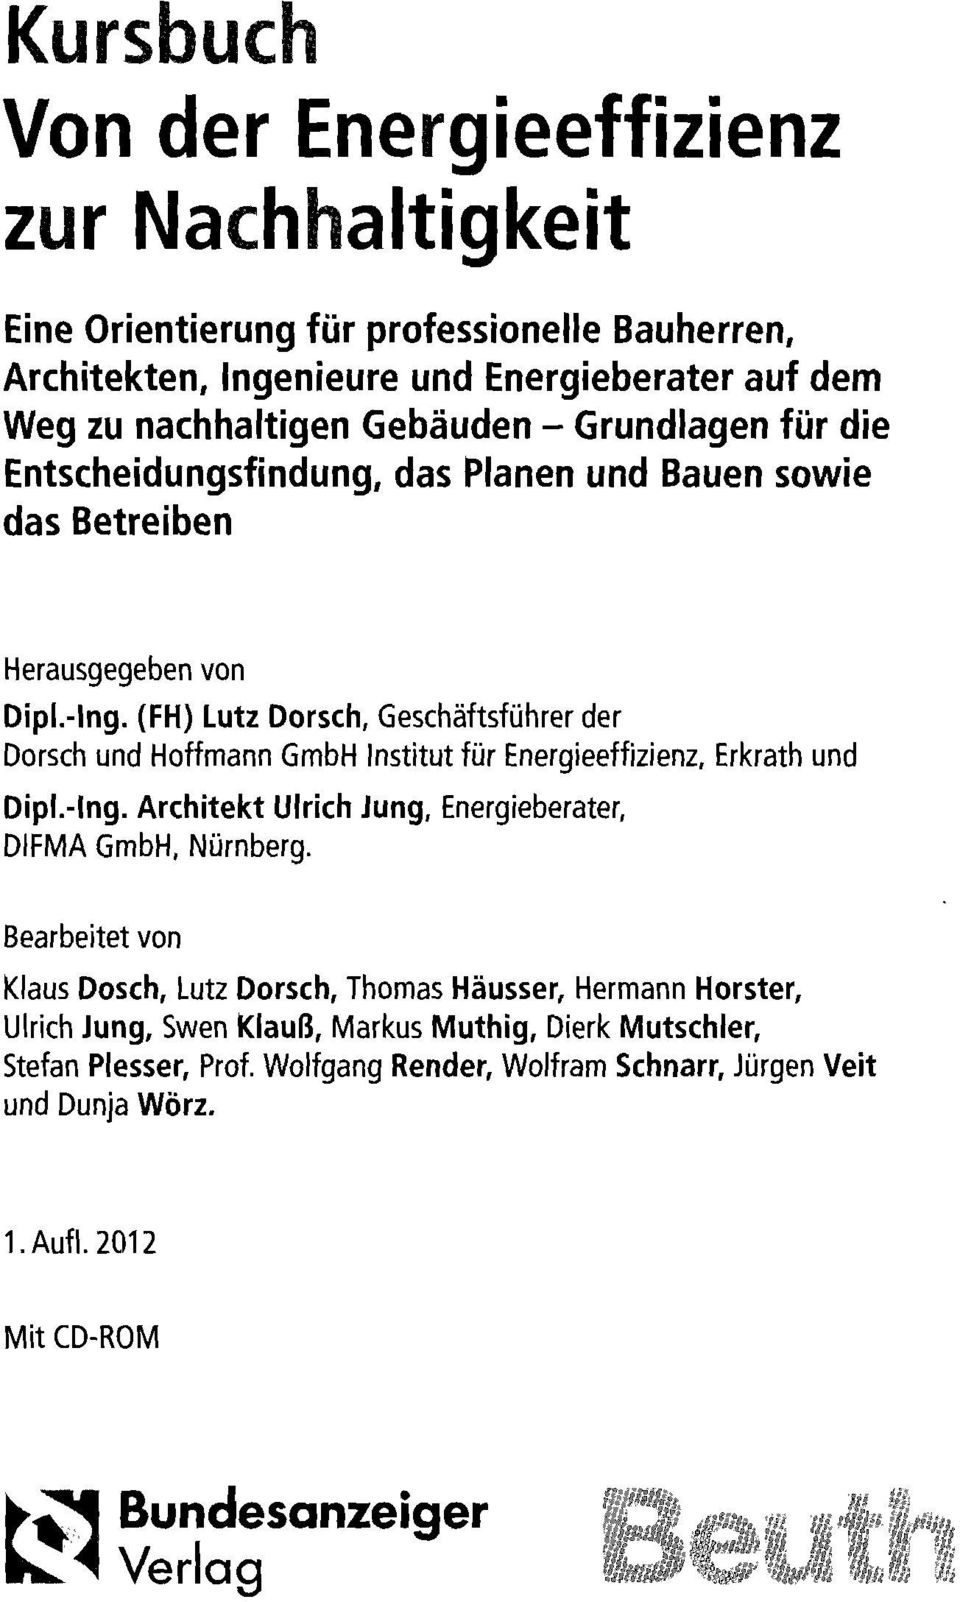 (FH) Lutz Dorsch, Geschäftsführer der Dorsch und Hoffmann GmbH Institutfür Energieeffizienz, Erkrath und Dipl.-Ing. Architekt Ulrich Jung, Energieberater, DIFMA GmbH, Nürnberg.